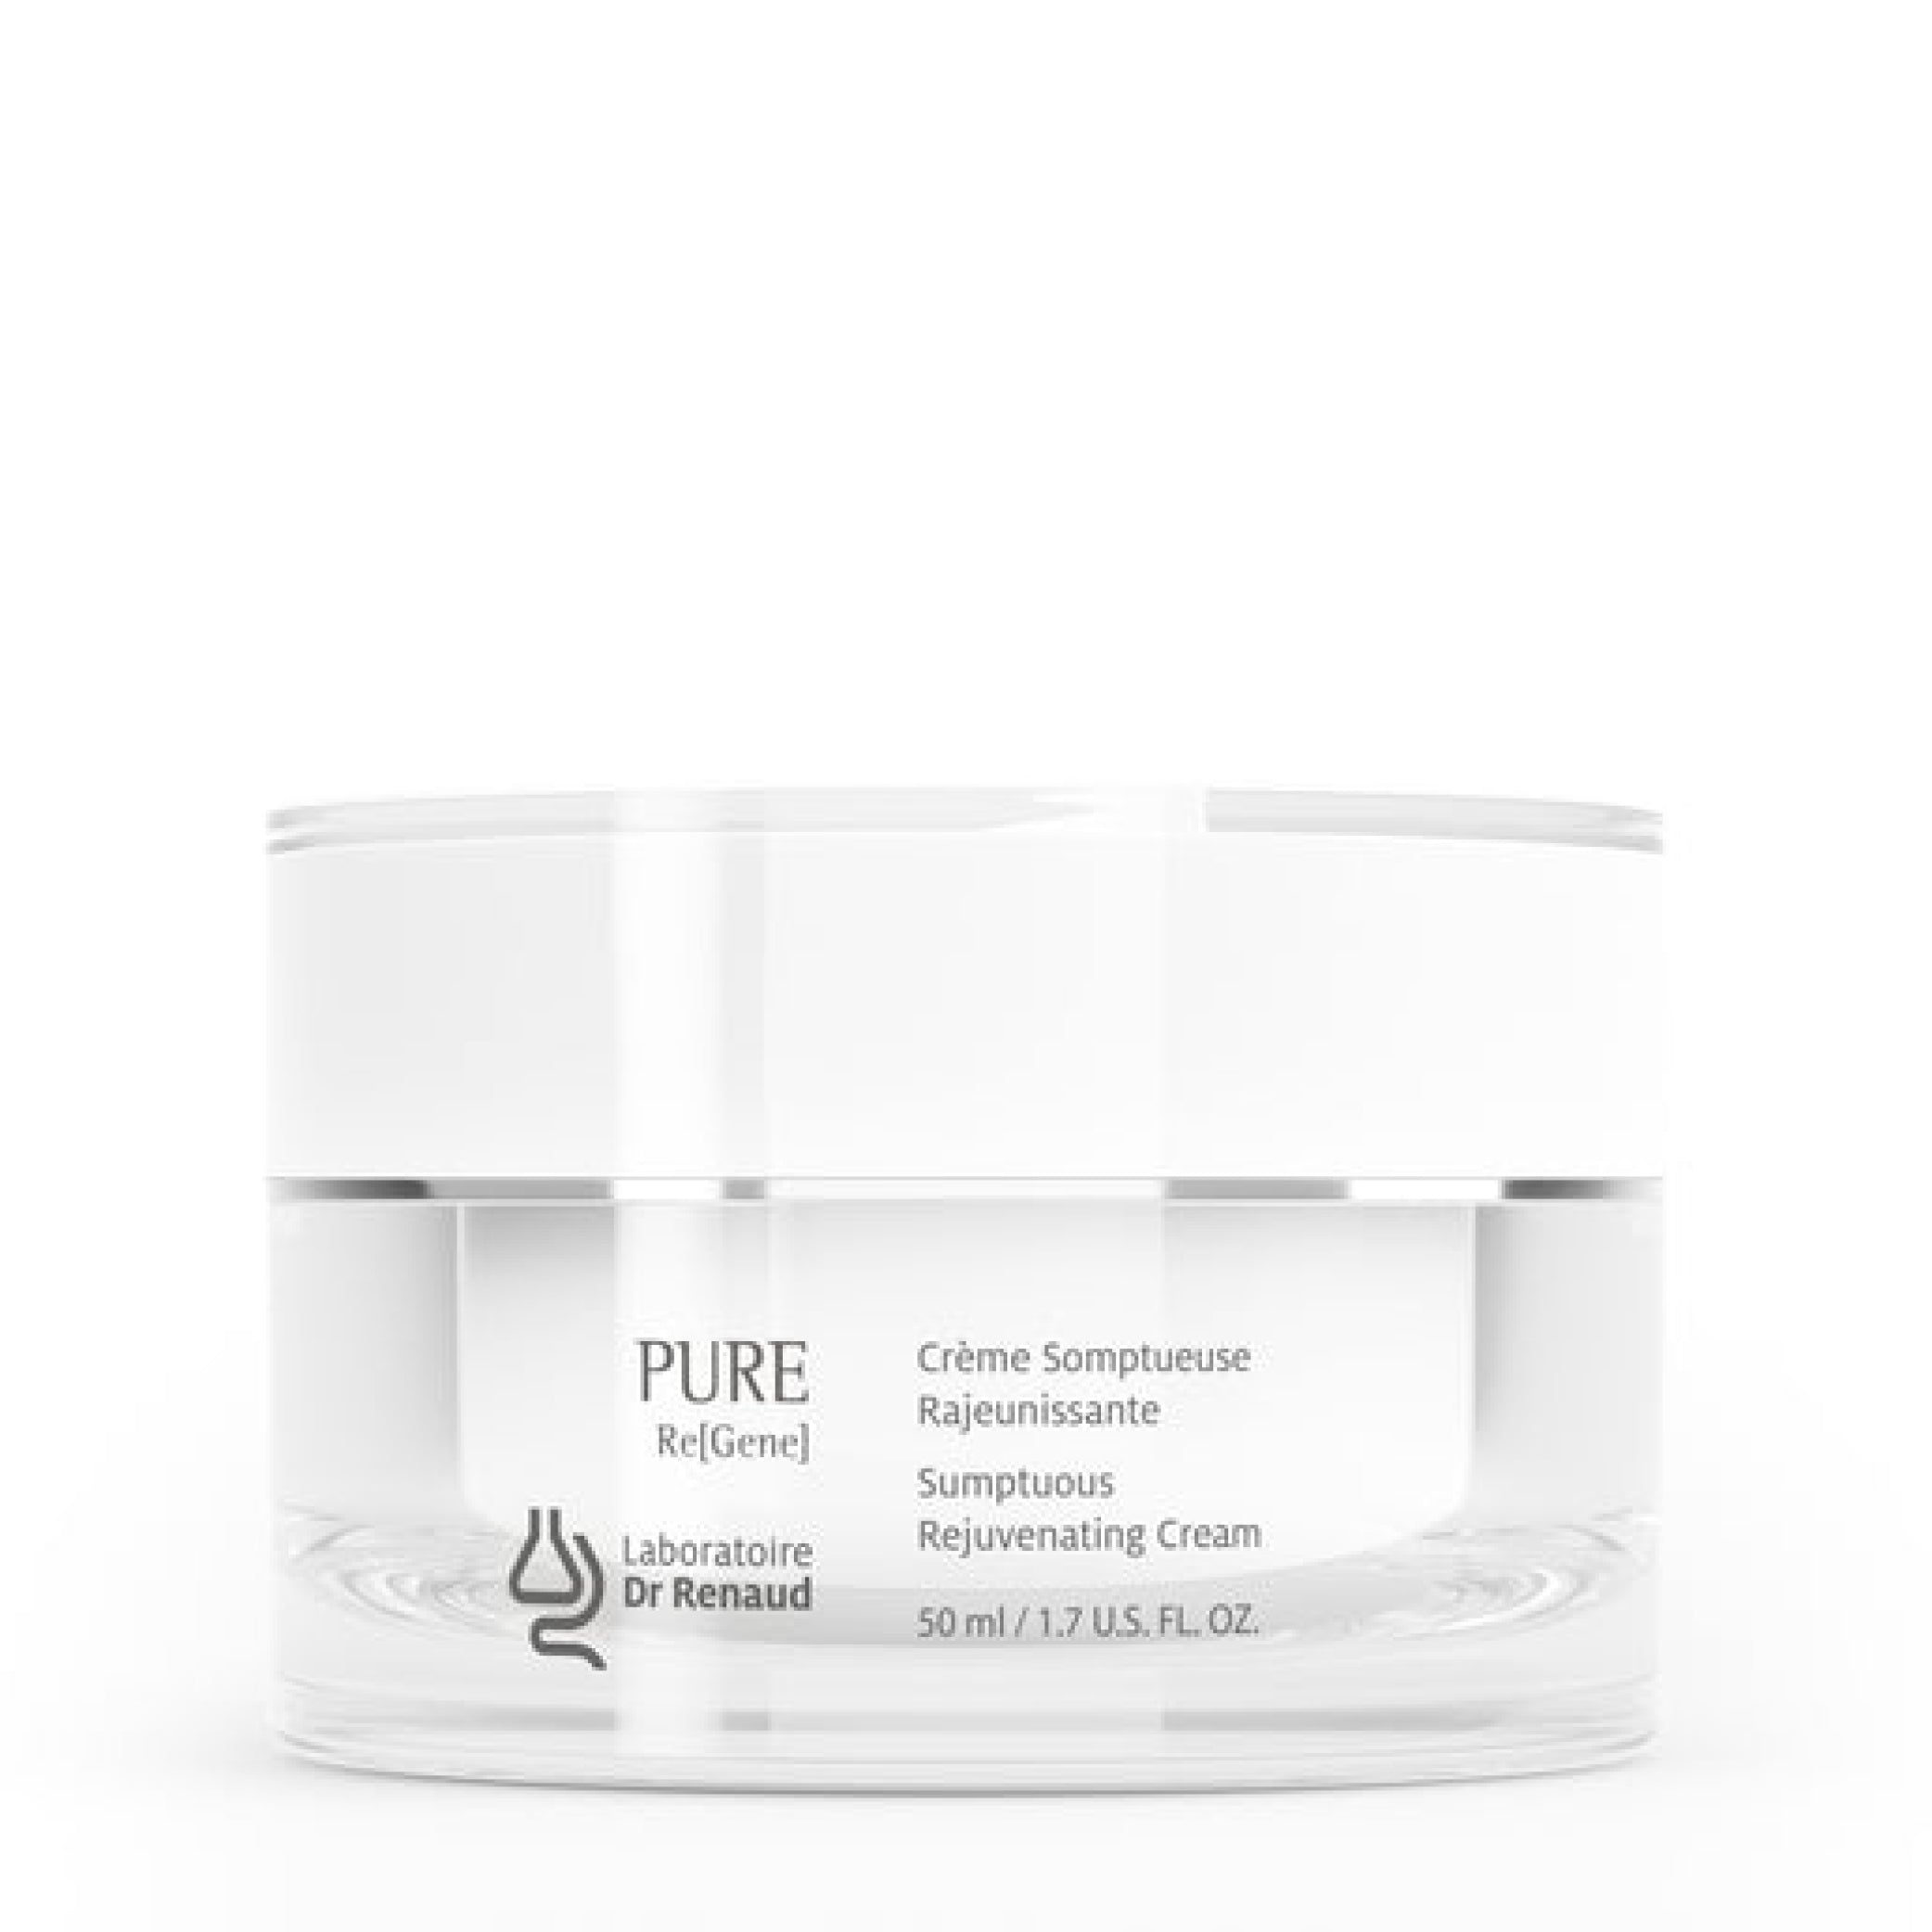 PURE Re[Gene] Sumptuous Rejuvenating Cream